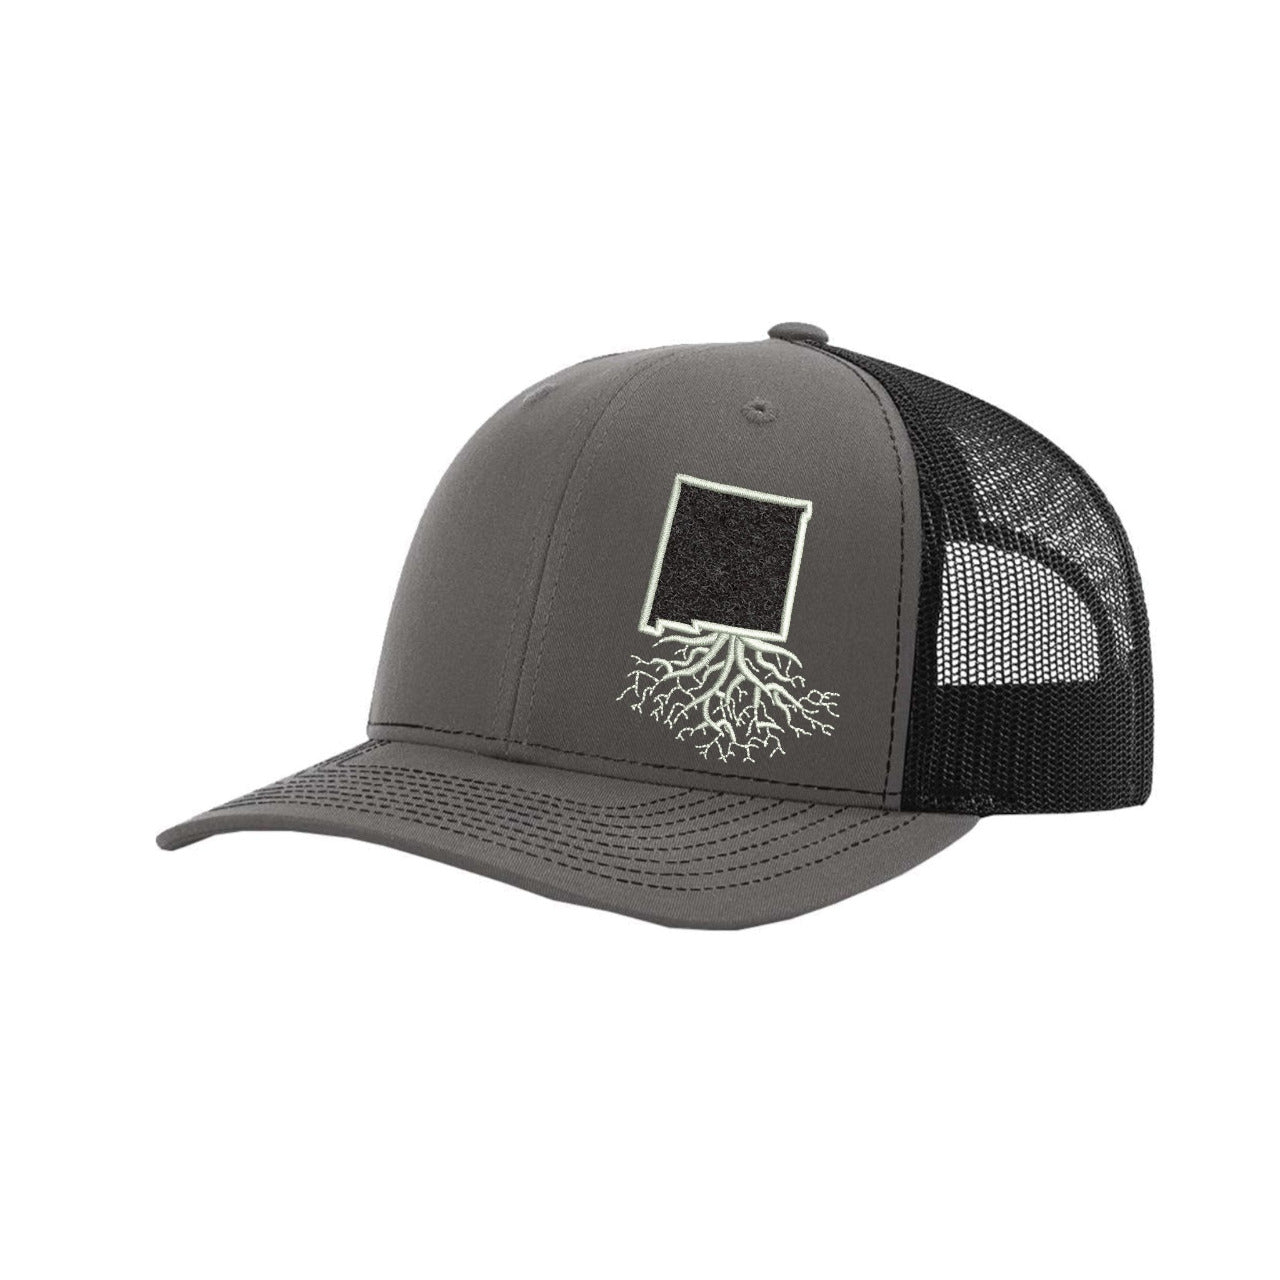 New Mexico Hook & Loop Trucker Cap - Hats